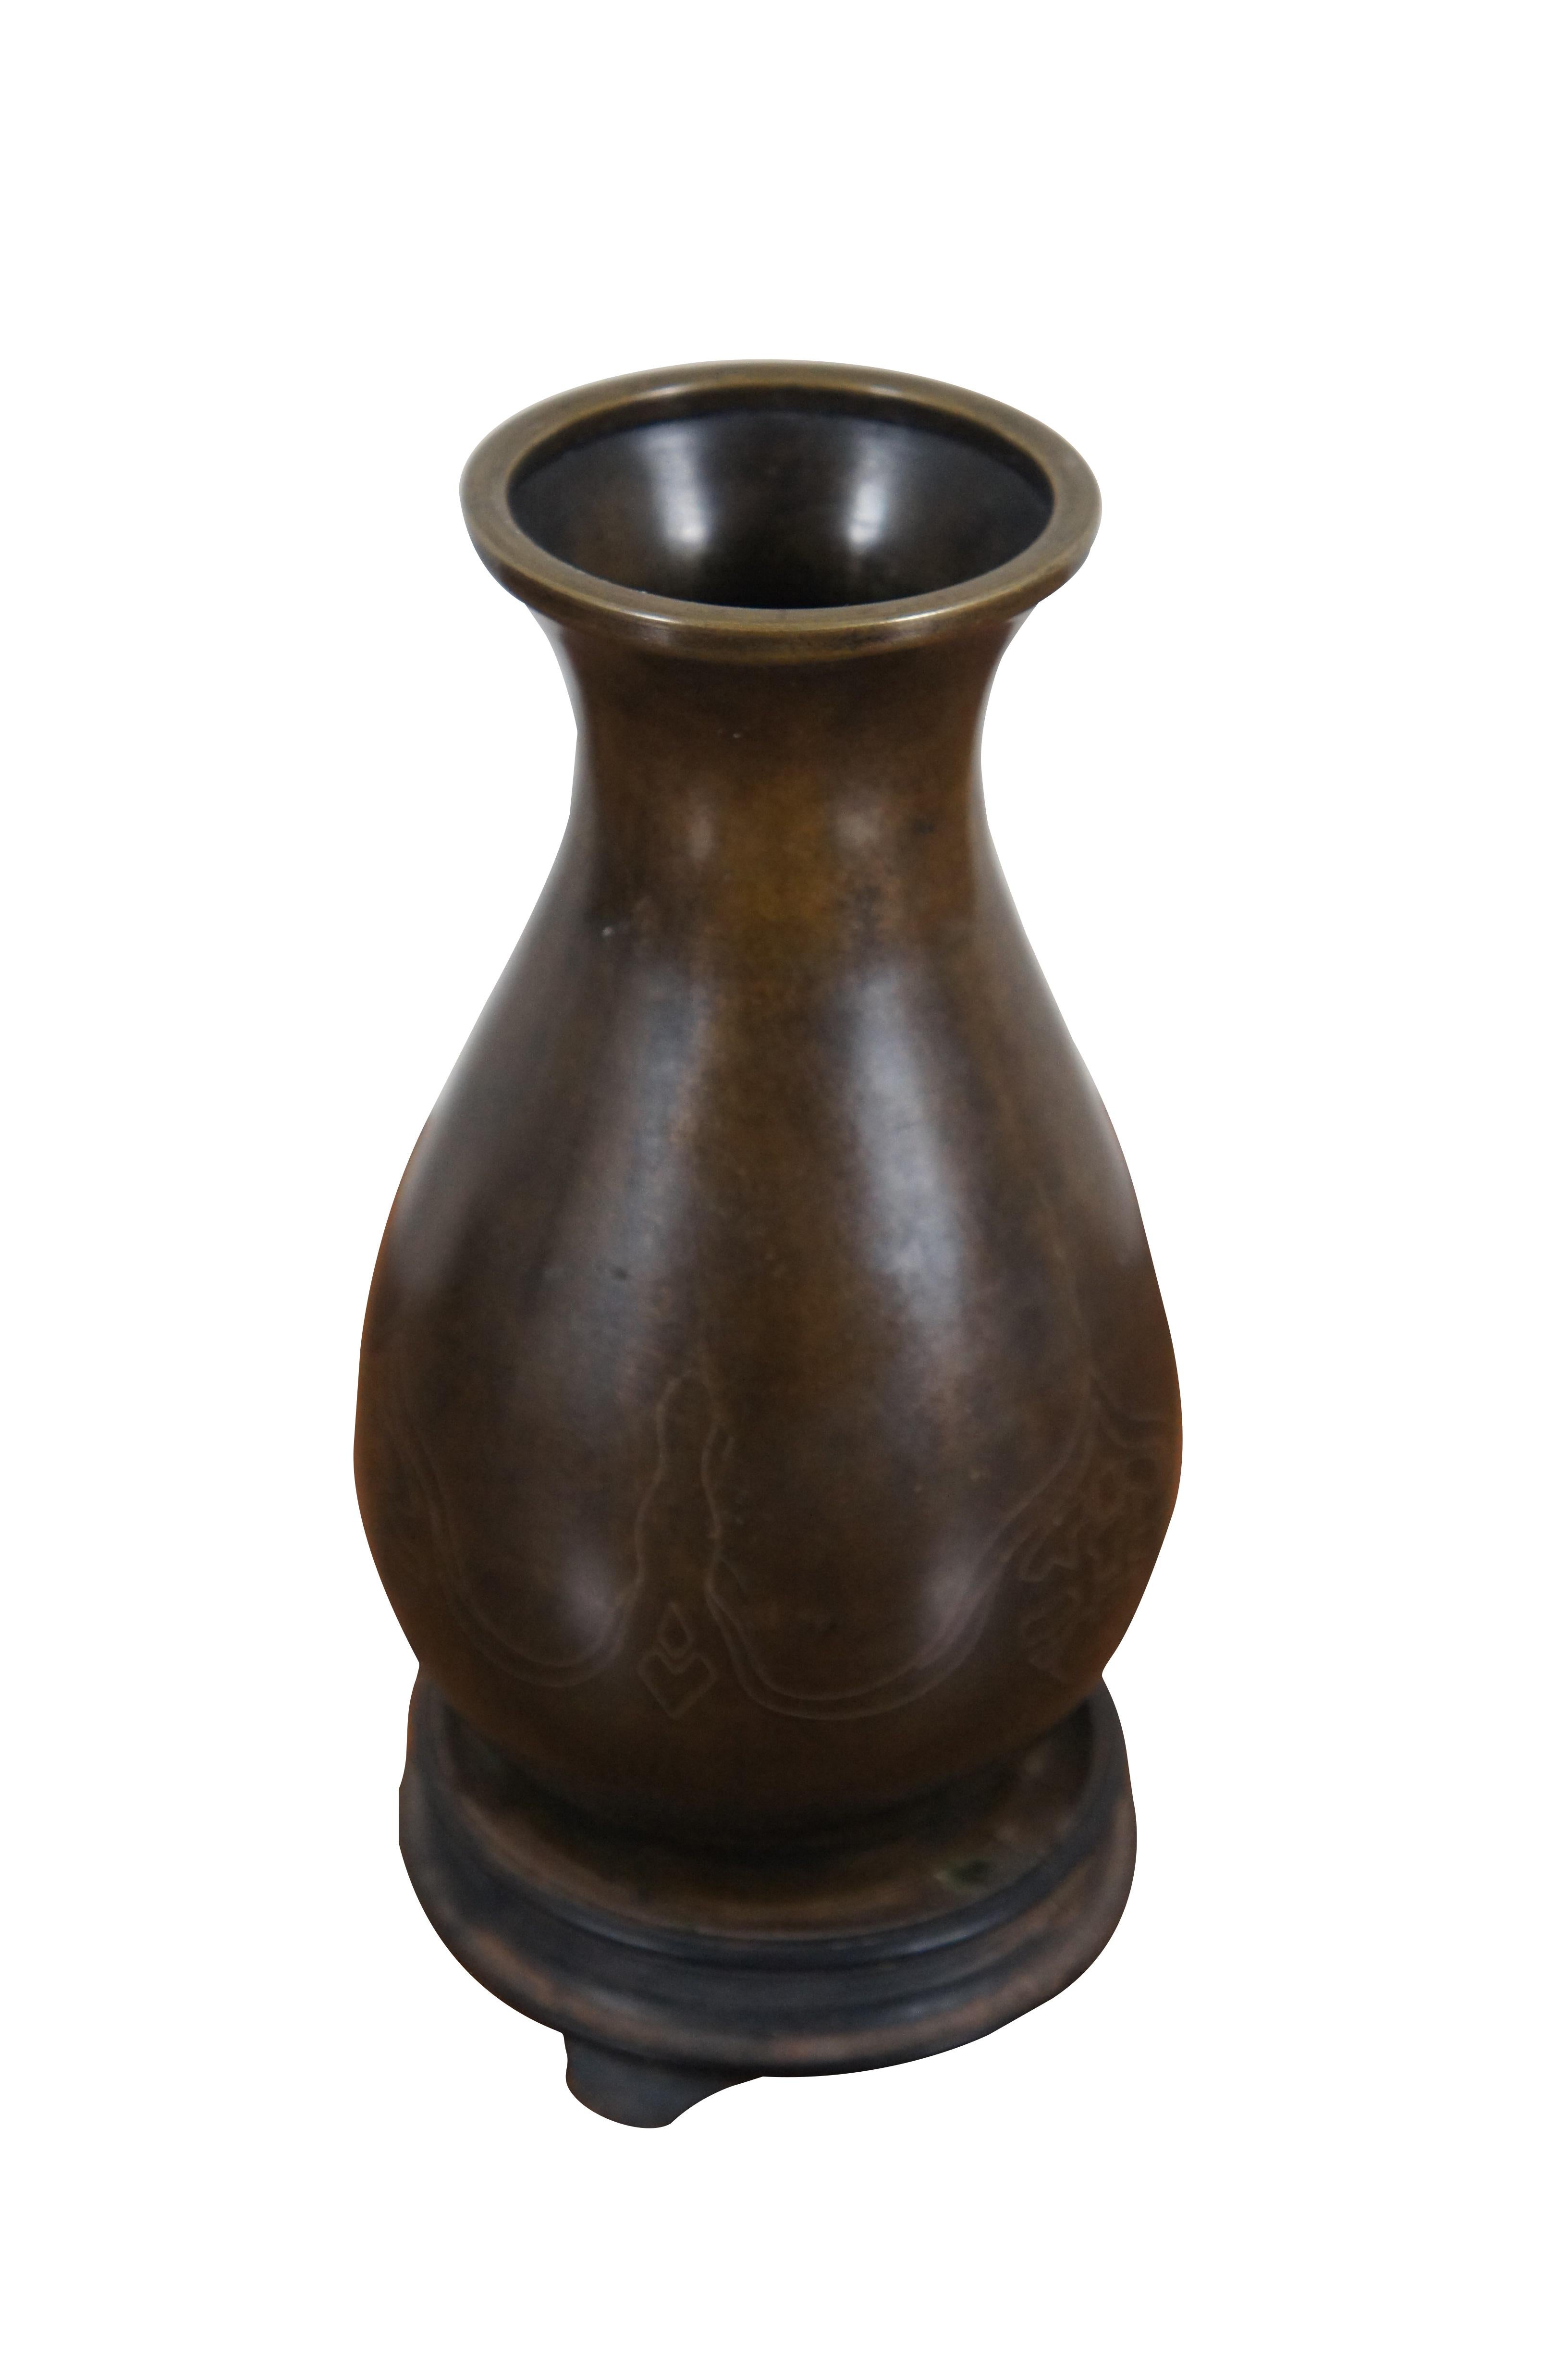 Antike Cloisonné-Vase aus Bronze mit Silberdrahteinlage. Das leicht gesprenkelte braune Finish ist mit einem einfachen, spärlichen Muster aus eingelegtem Silberdraht versehen. Inklusive Holzständer.

Abmessungen:
4,25